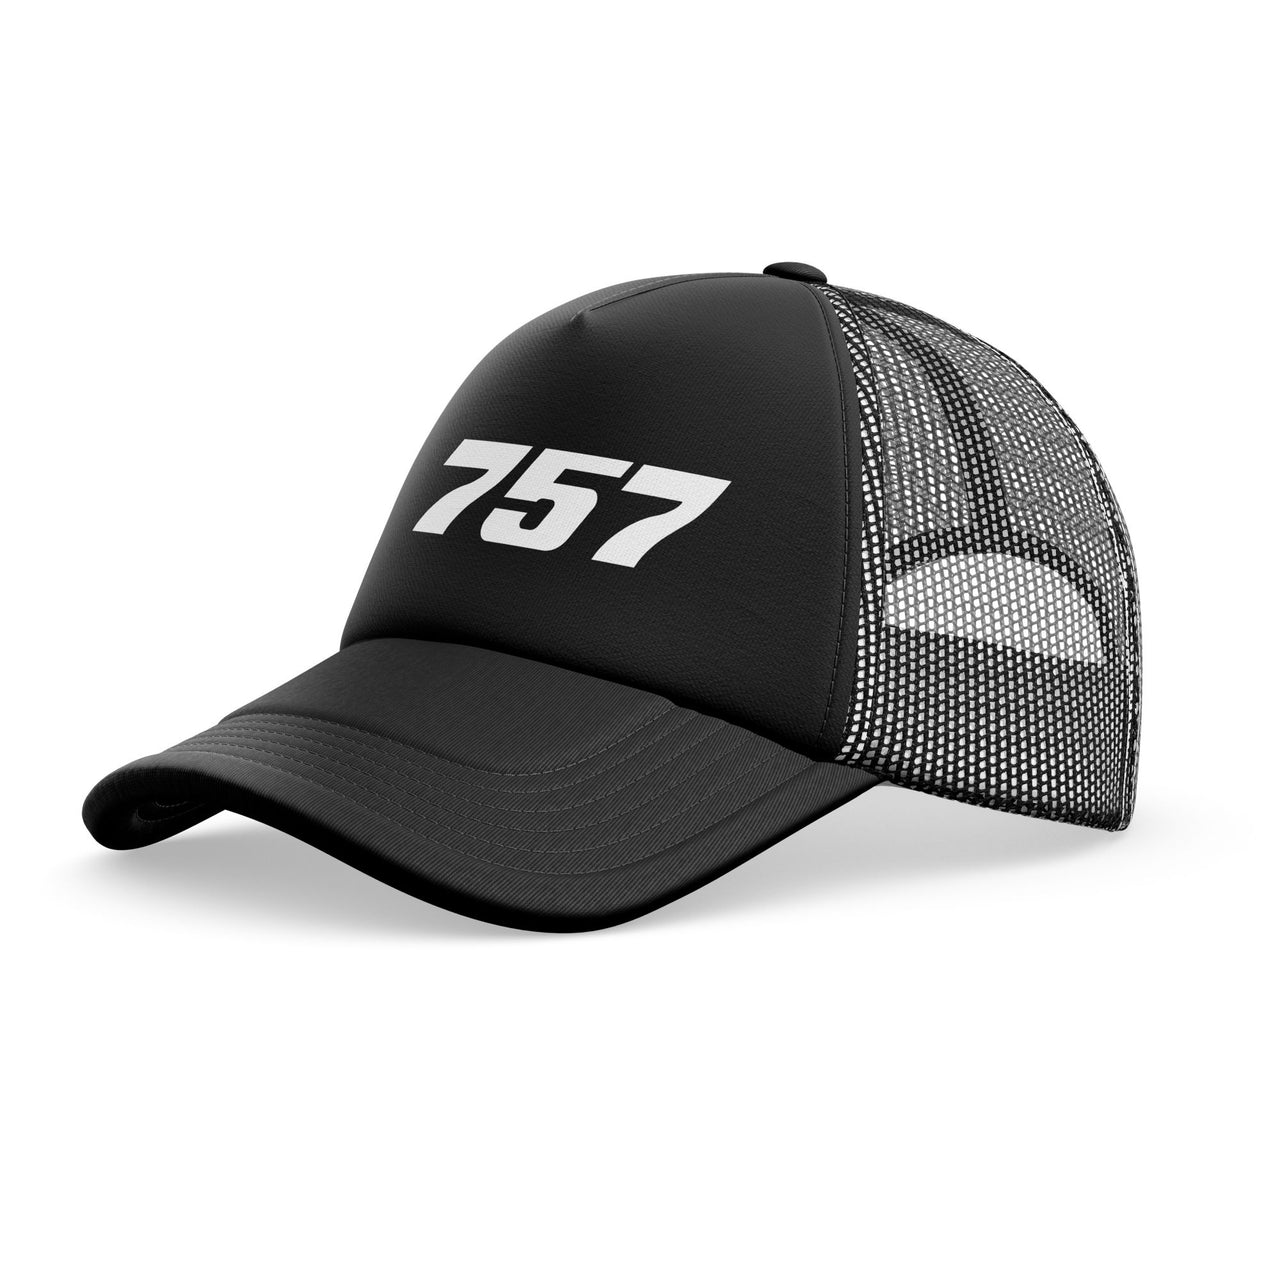 757 Flat Text Designed Trucker Caps & Hats